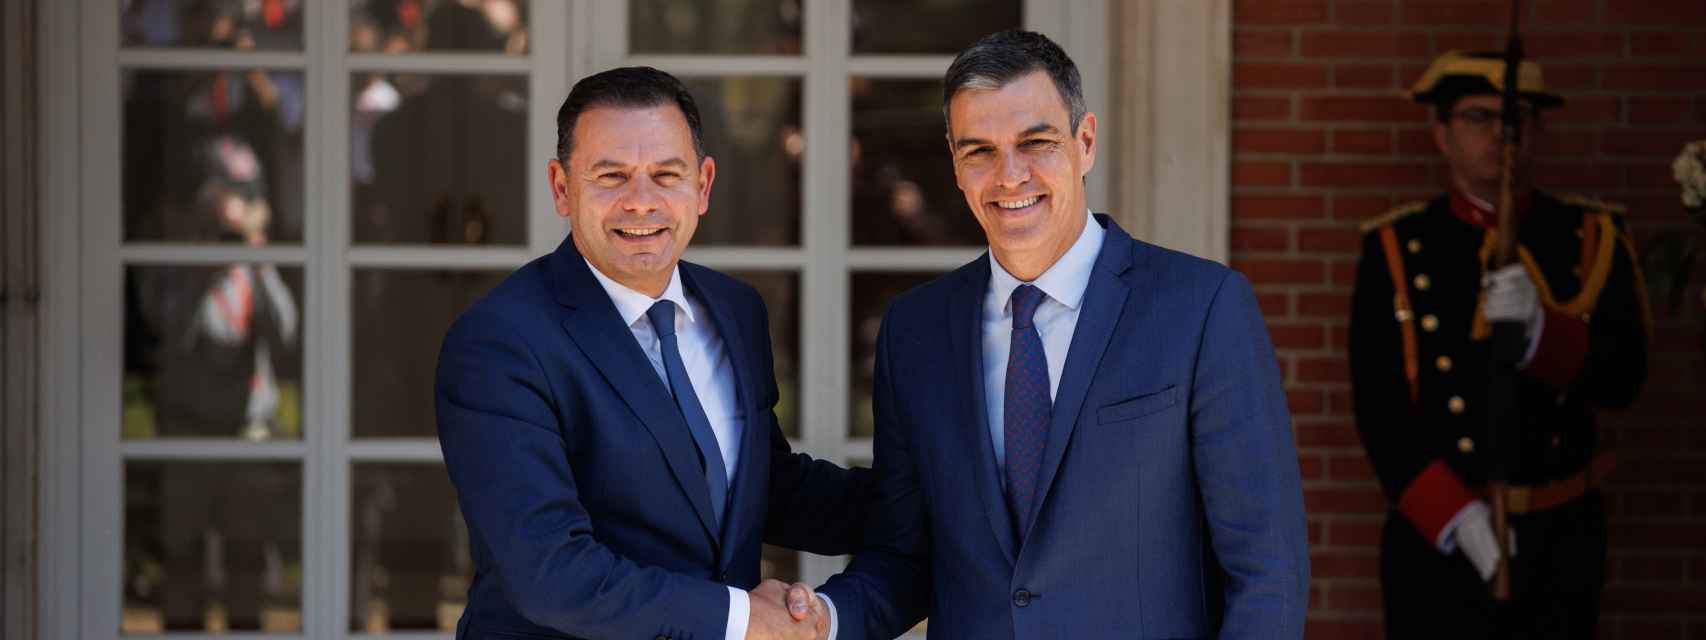 Pedro Sánchez recibe al primer ministro de la República de Portugal, Luís Montenegro.